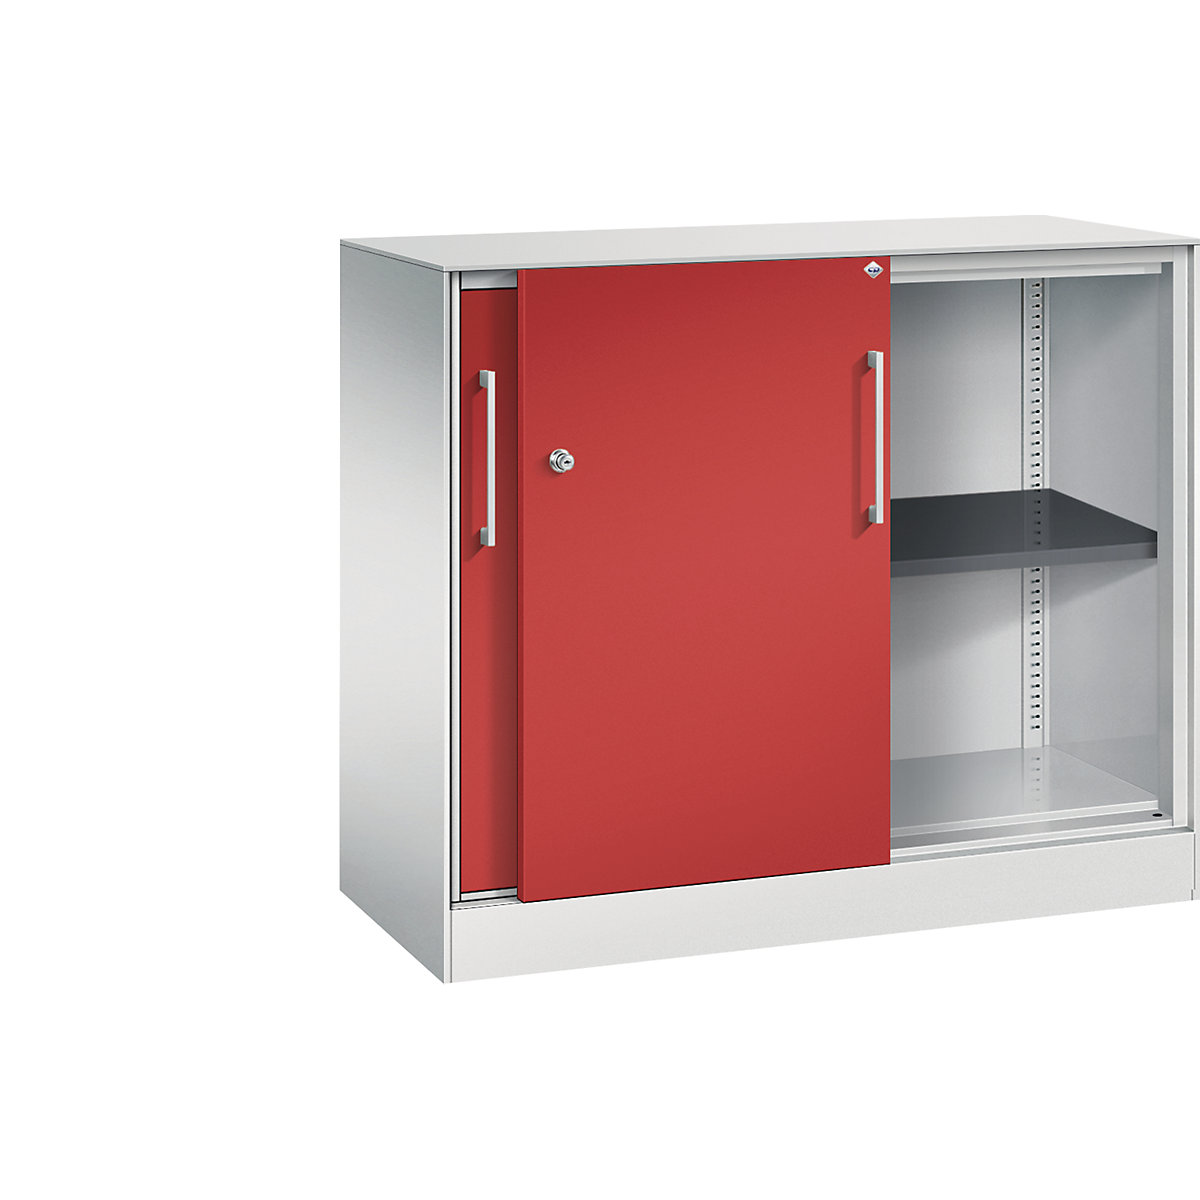 C+P – Skříň s posuvnými dveřmi ASISTO, výška 897 mm, šířka 1000 mm, světlá šedá/ohnivě červená